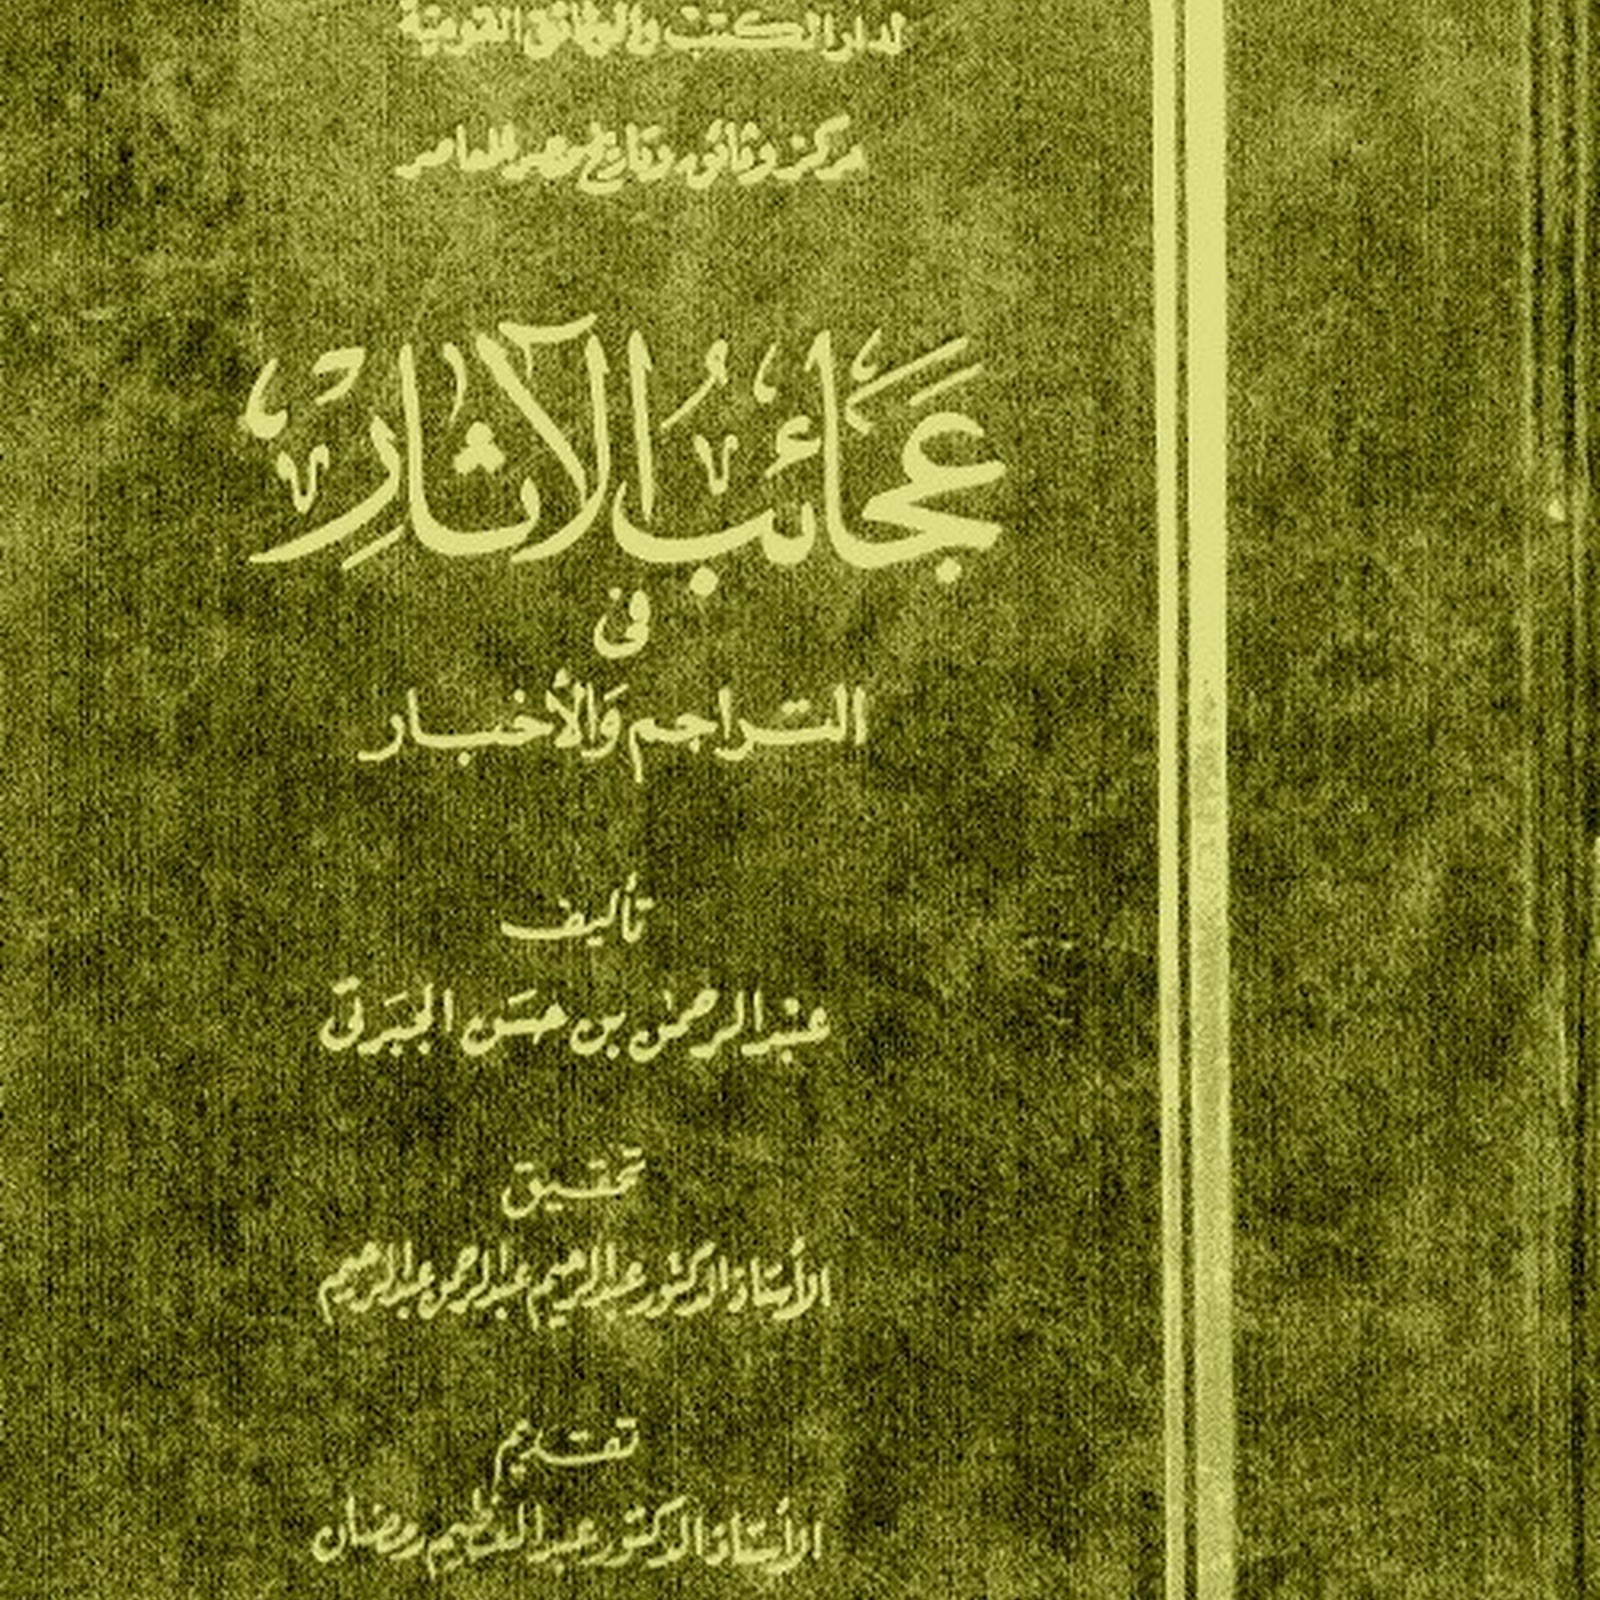 عجائب الآثار في التراجم والأخبار عبدالرحمن الجبرتي Pdf مكتبة سور الازبكية